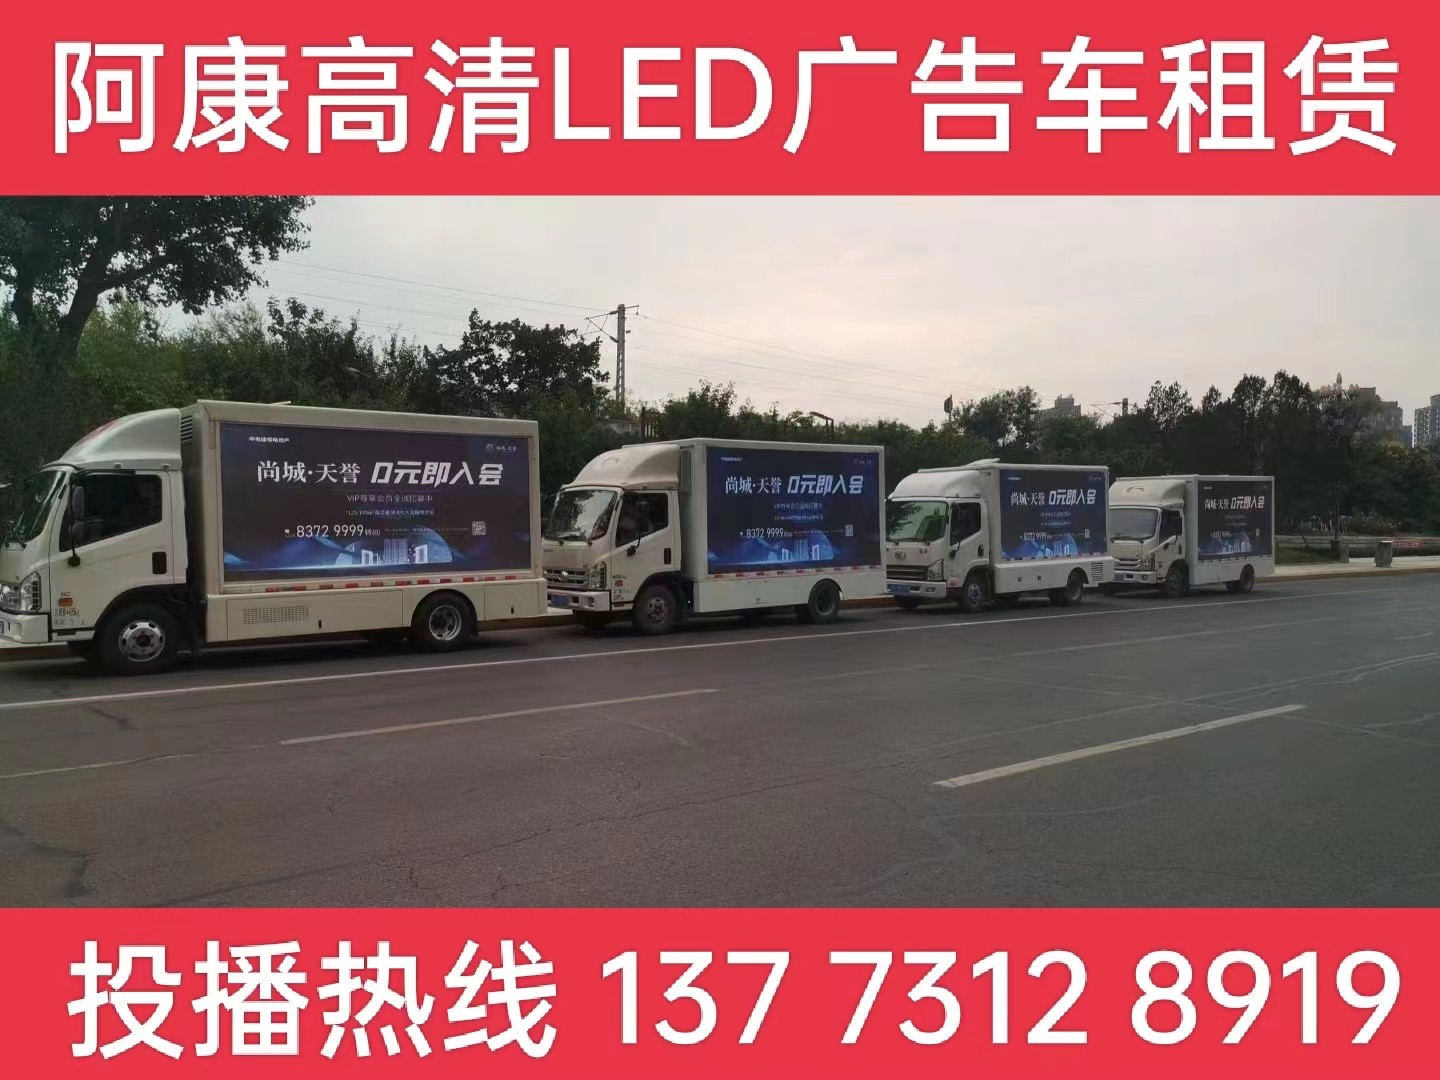 靖江LED广告车出租-某房产公司效果展示